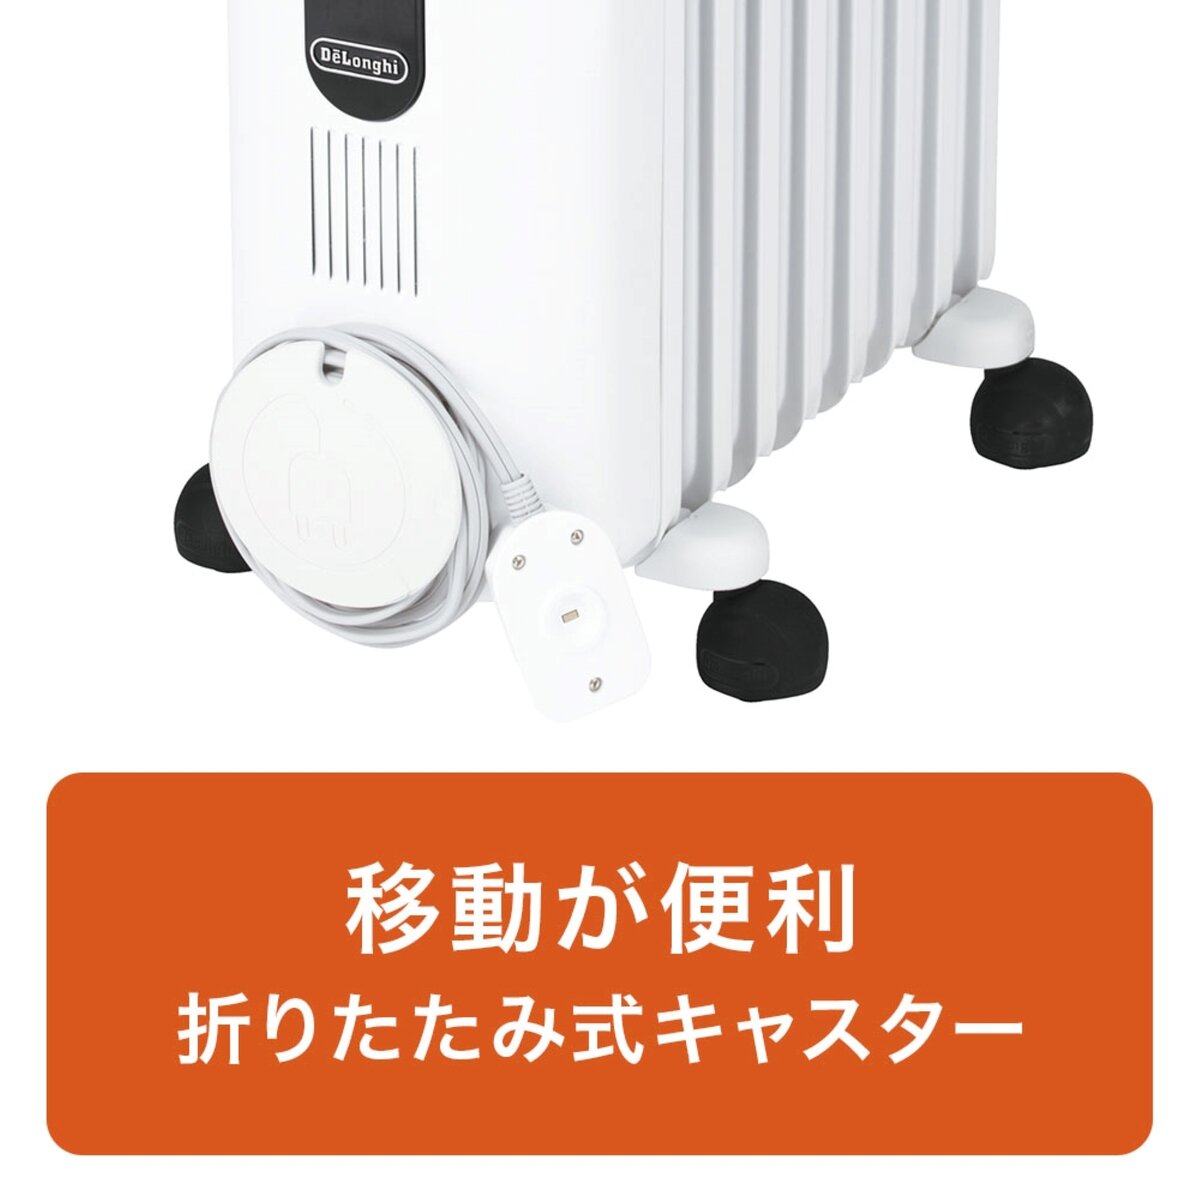 デロンギ オイルヒーター 8~10畳 JRE0812 | Costco Japan